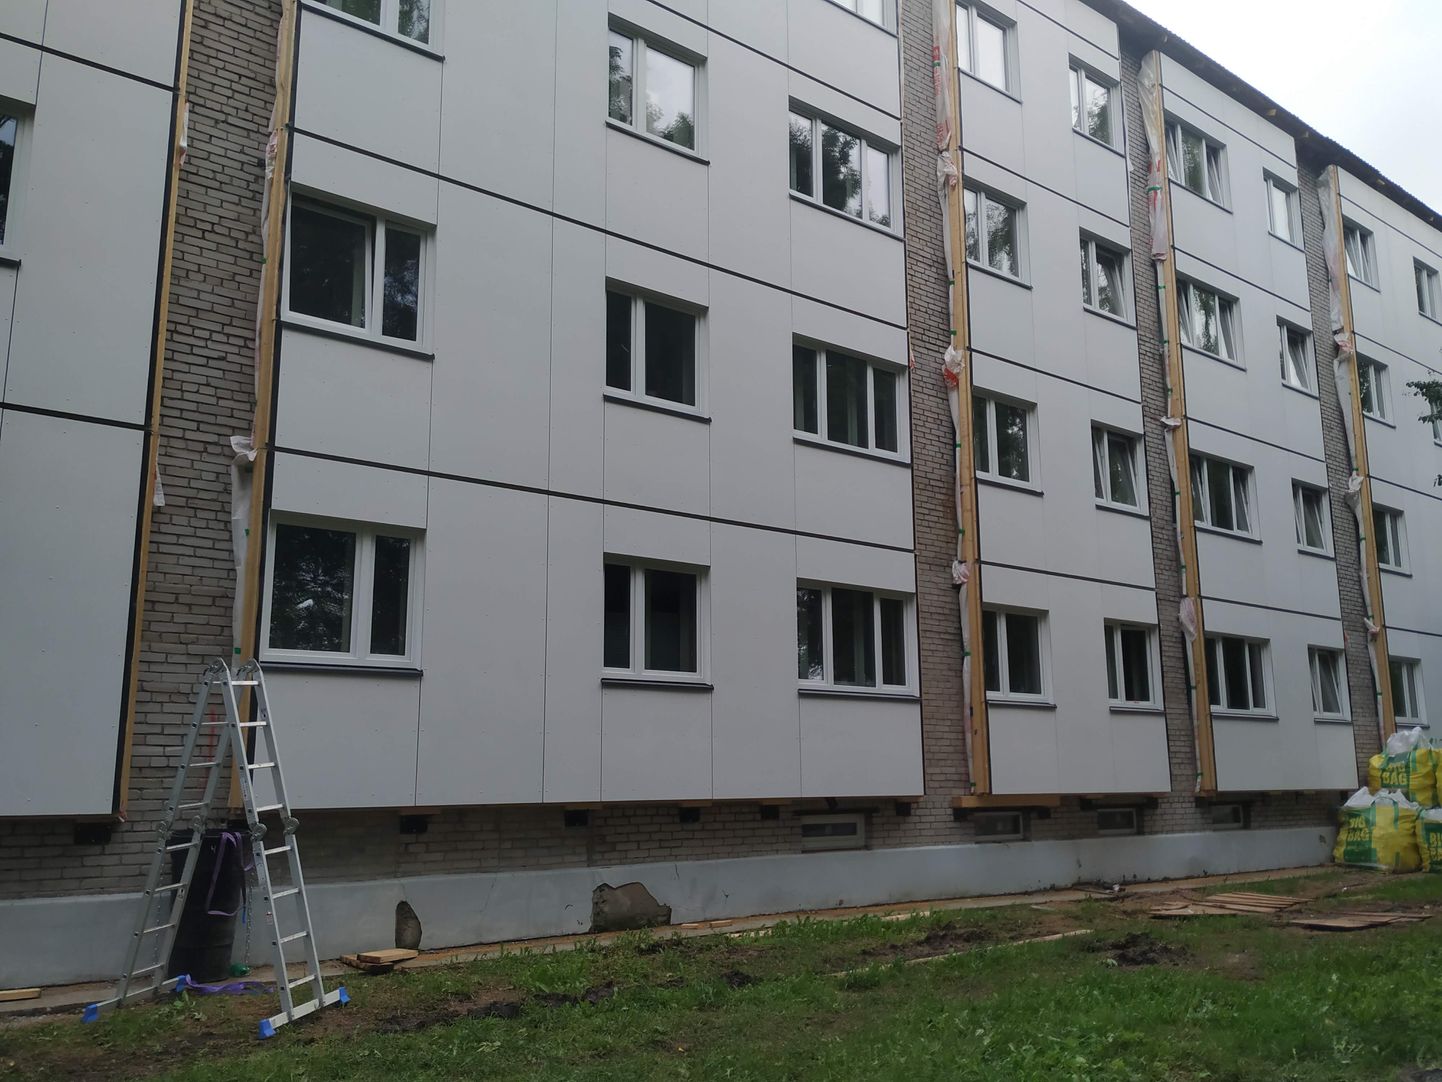 Дом в Таллинне в процессе реновации.